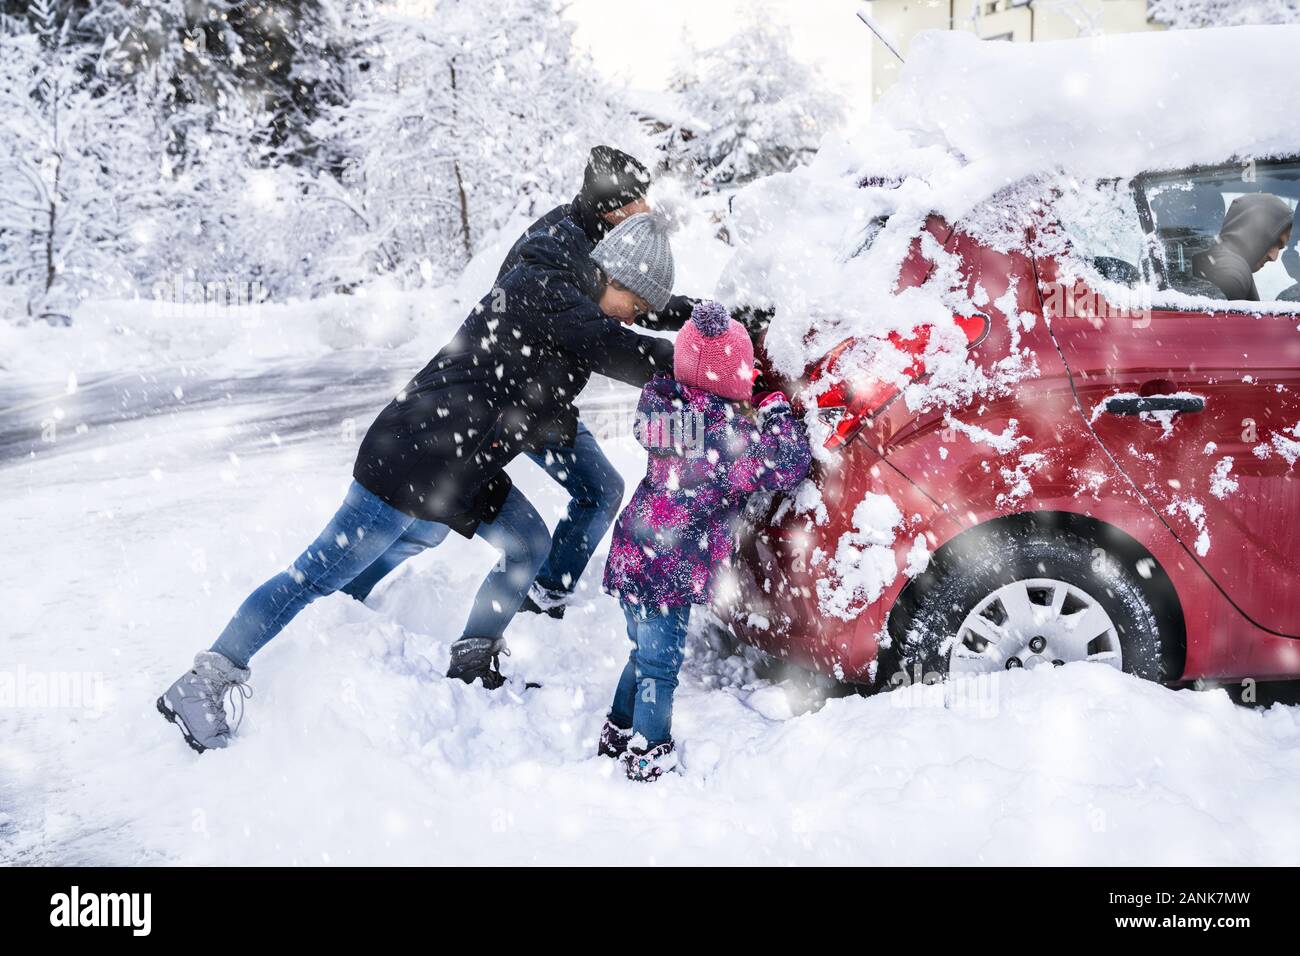 Parken und Schneeräumer: Wenn das Auto im Schnee feststeckt